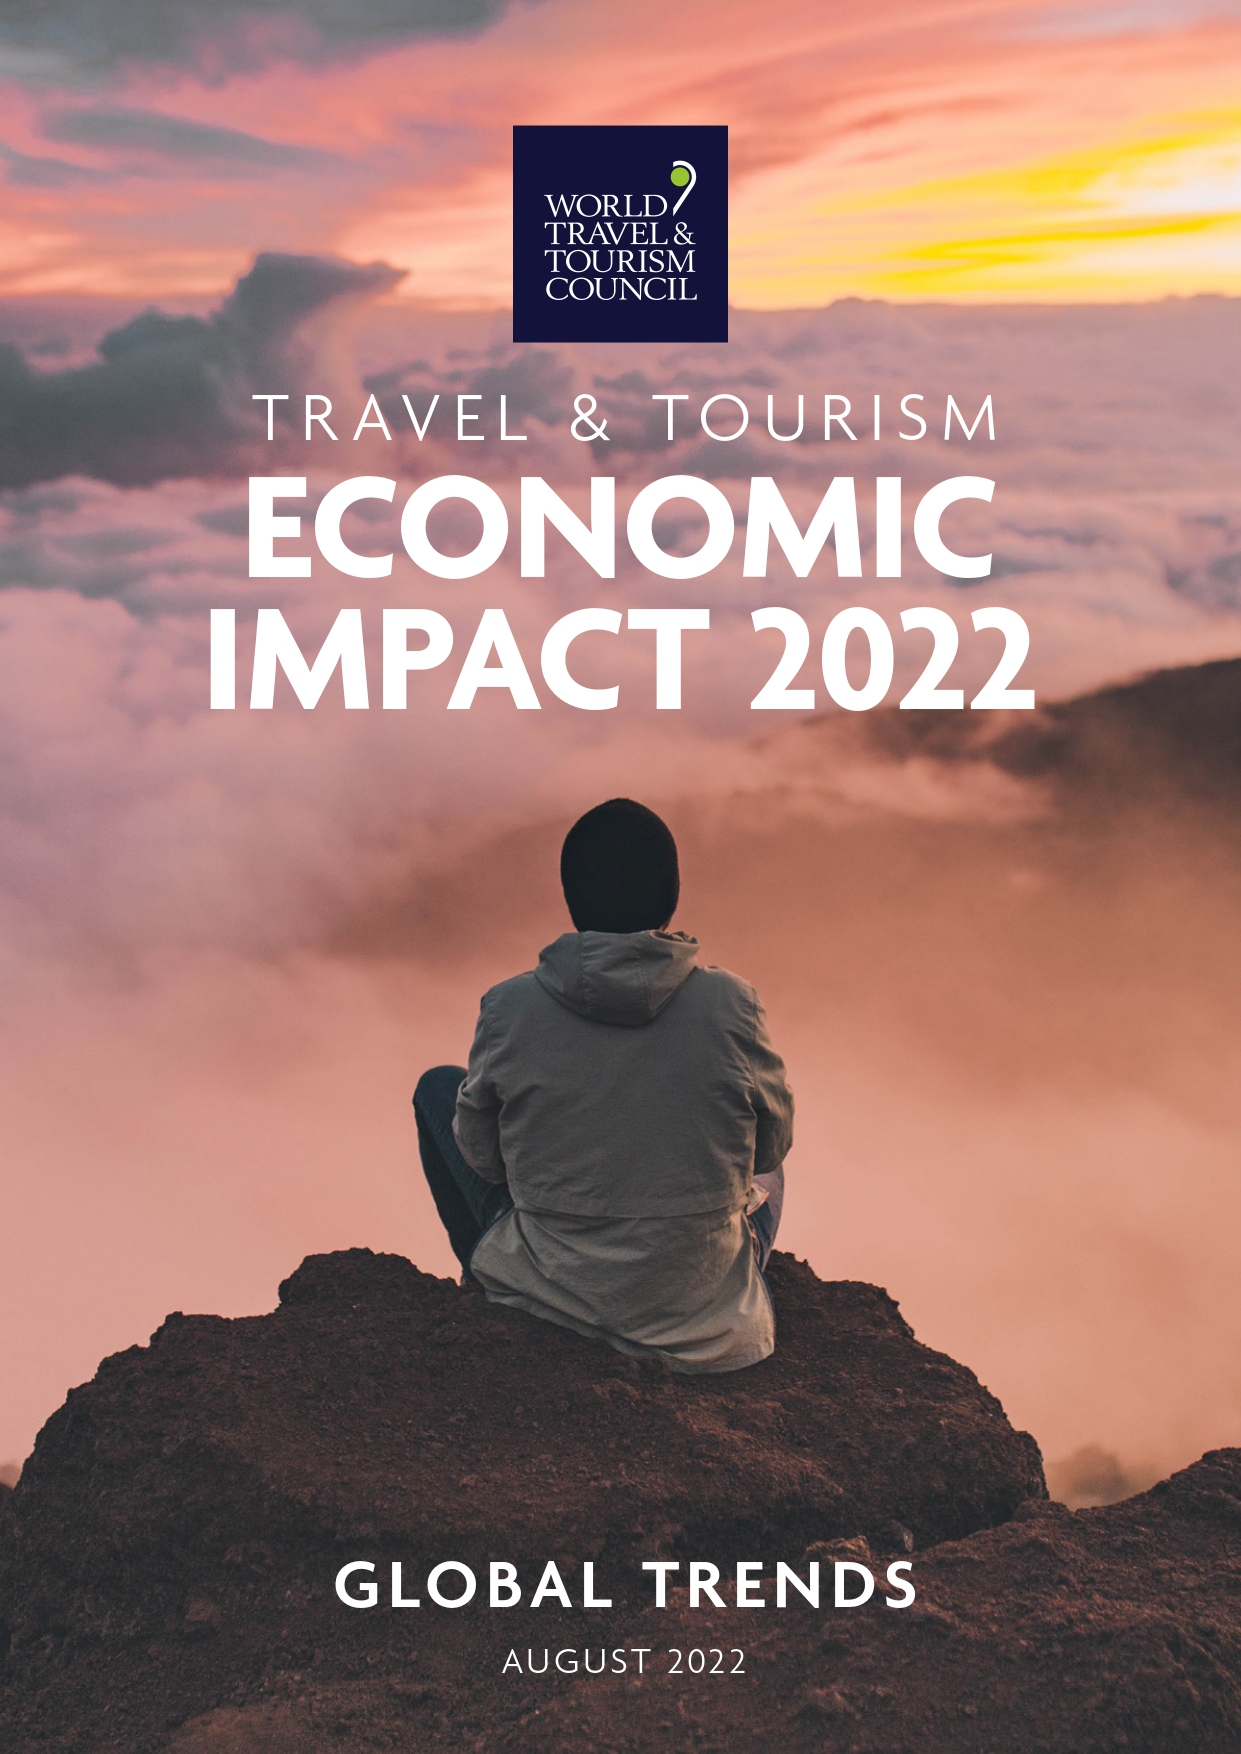 world travel & tourism council travel & tourism economic impact